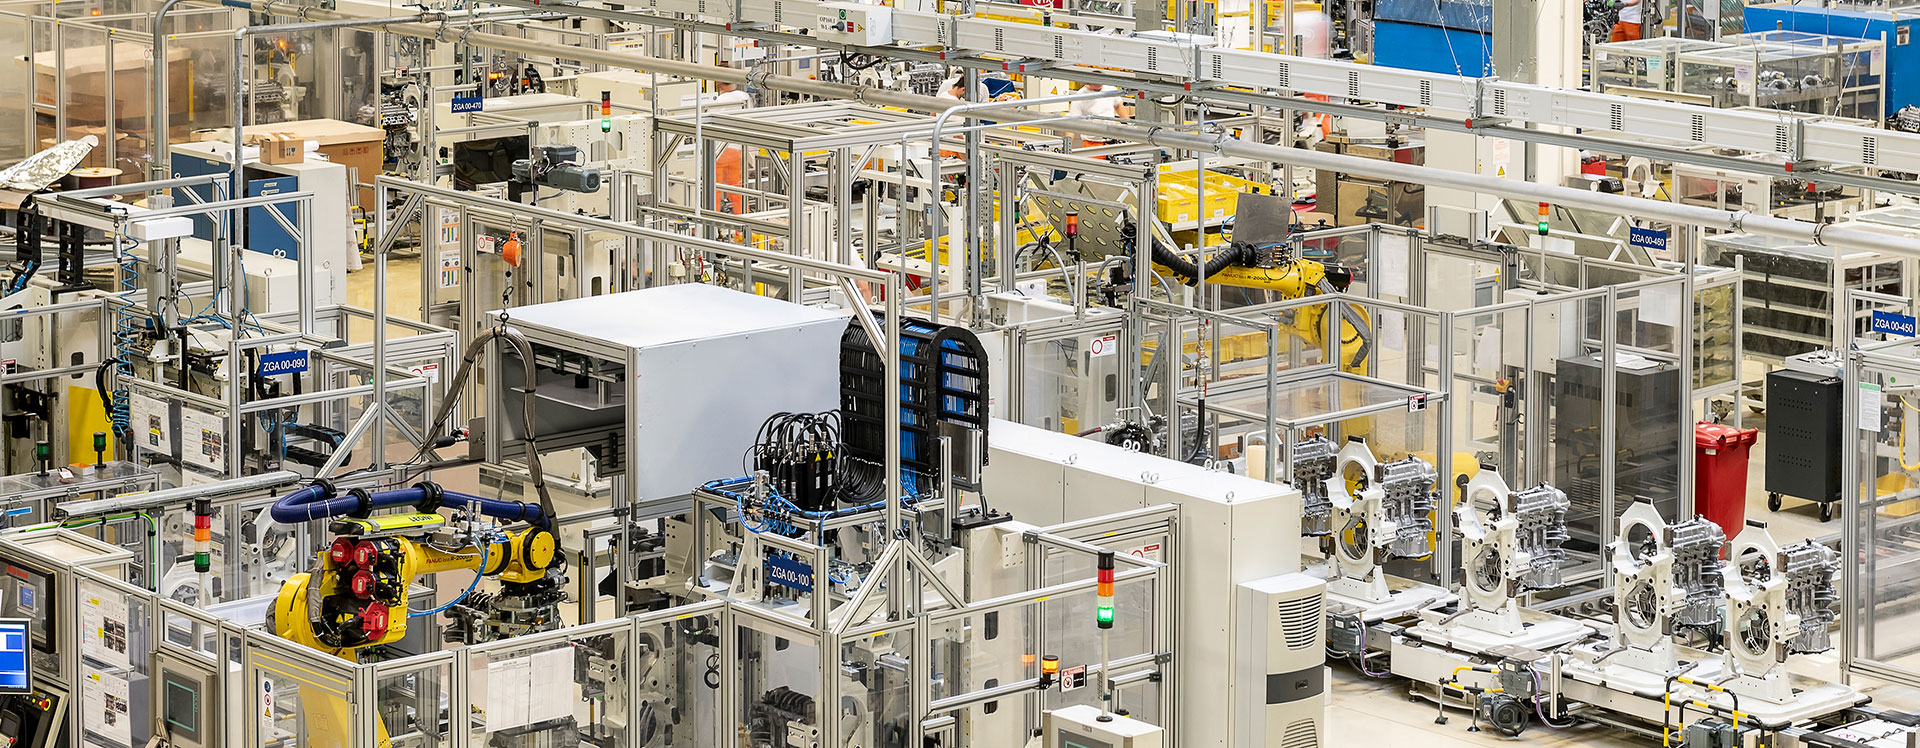 Η Kia επενδύει 70 εκατομμύρια ευρώ στην παραγωγή κινητήρων στην Ευρώπη